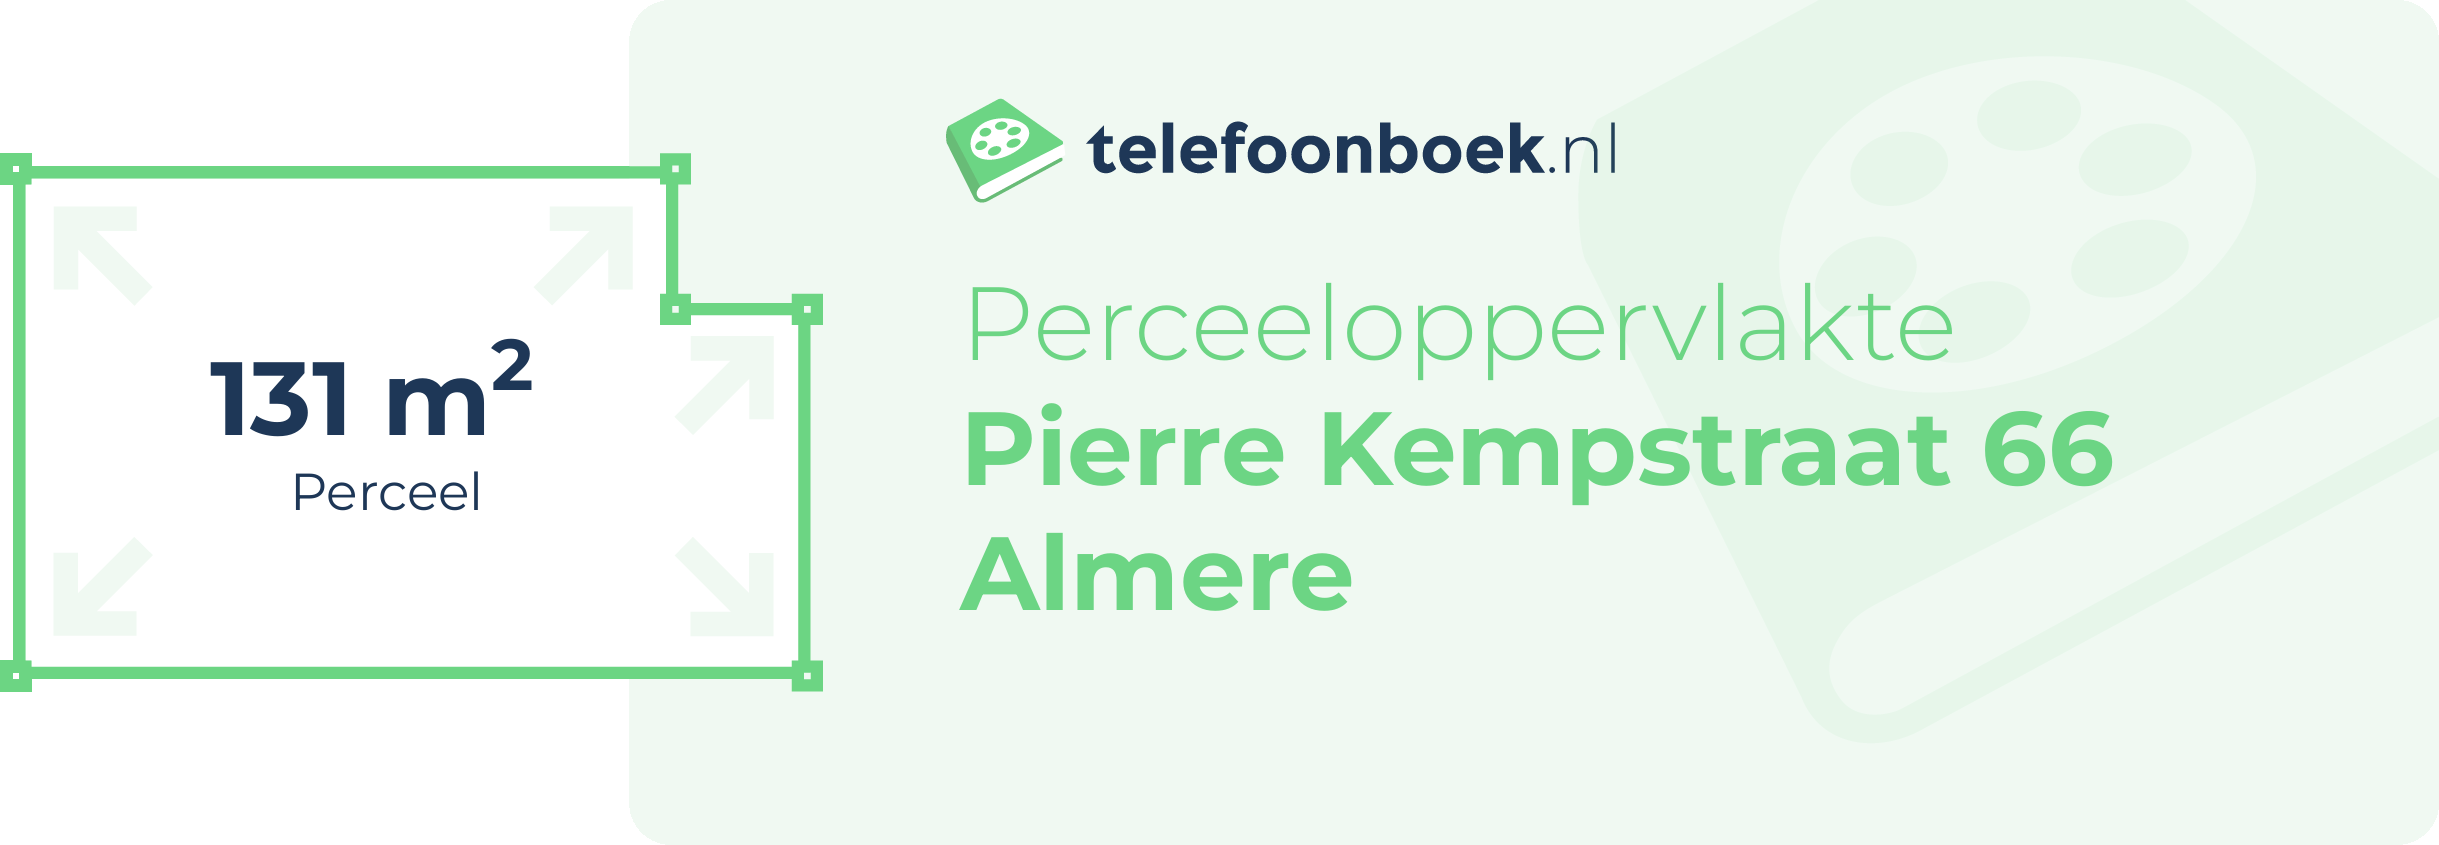 Perceeloppervlakte Pierre Kempstraat 66 Almere